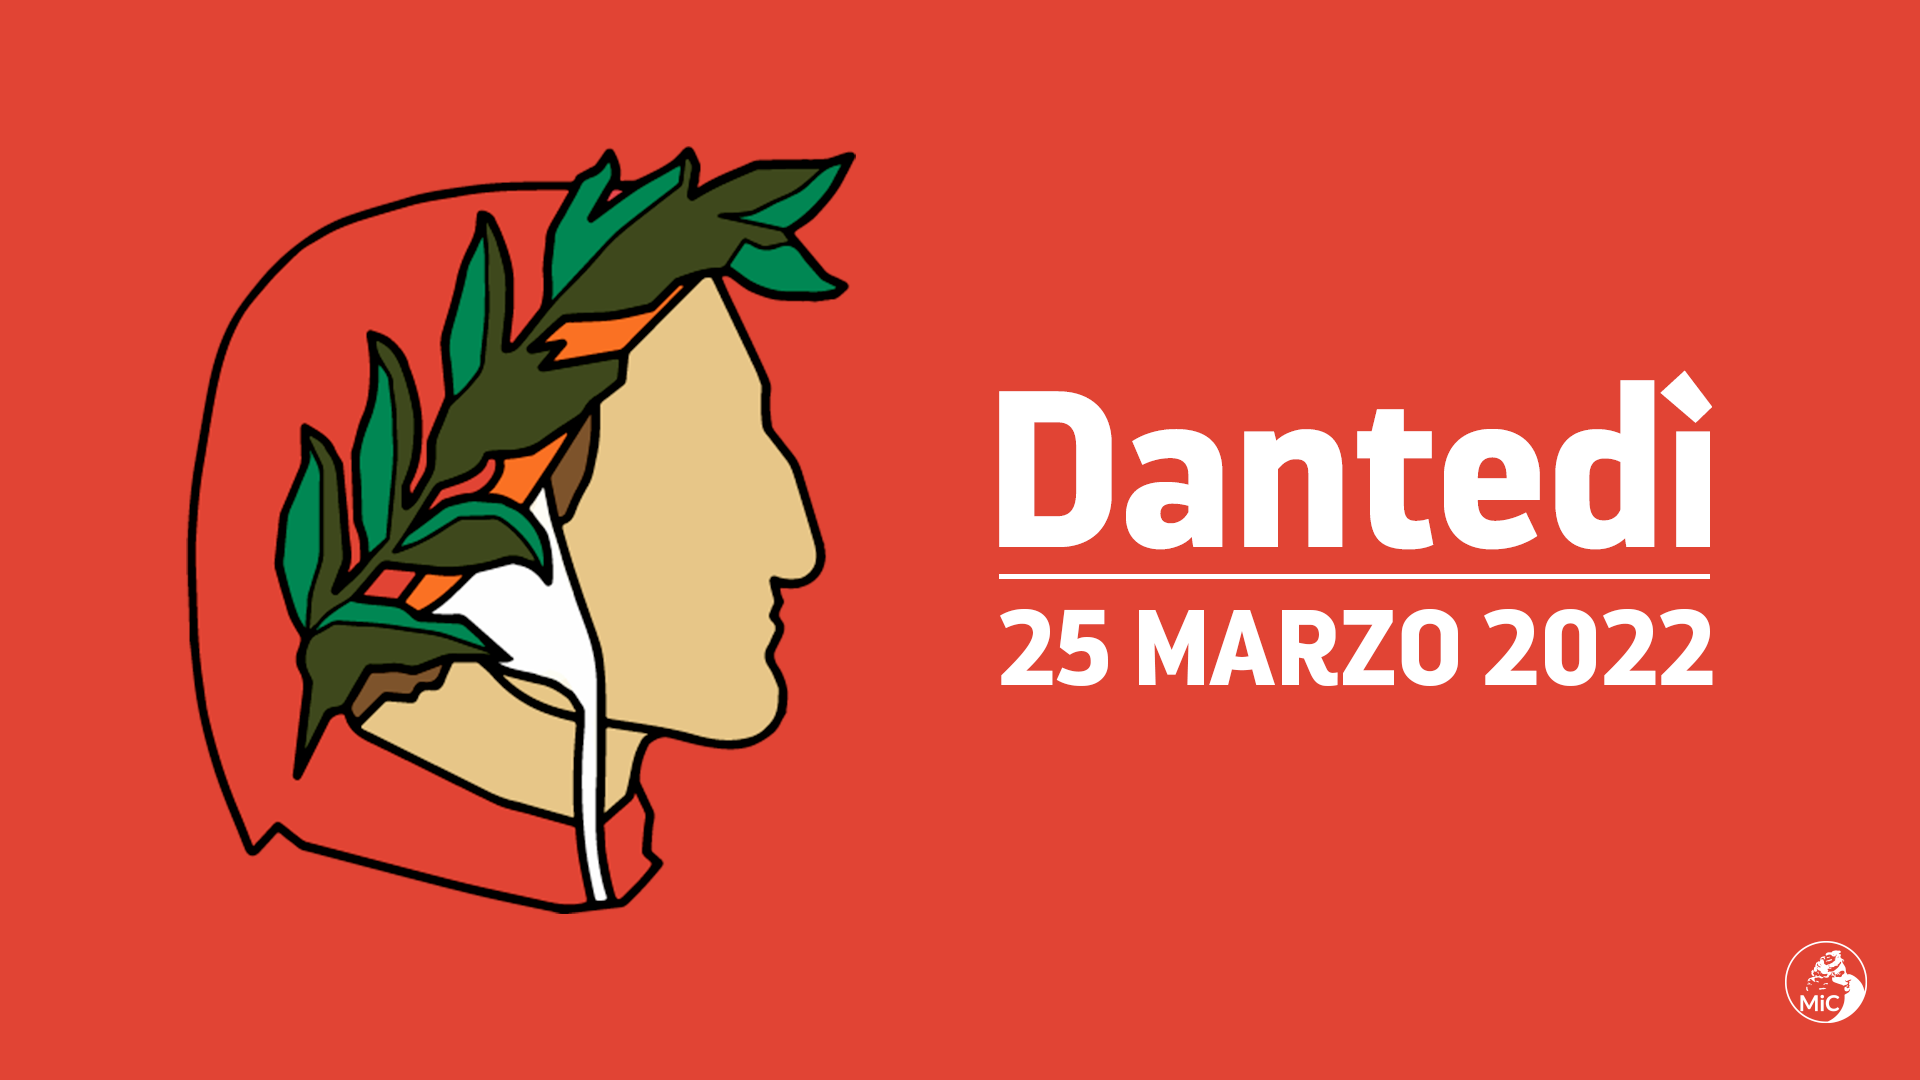 Evento Dantedì 25 marzo 2022 al Museo di Palazzo Lanfranchi a Matera